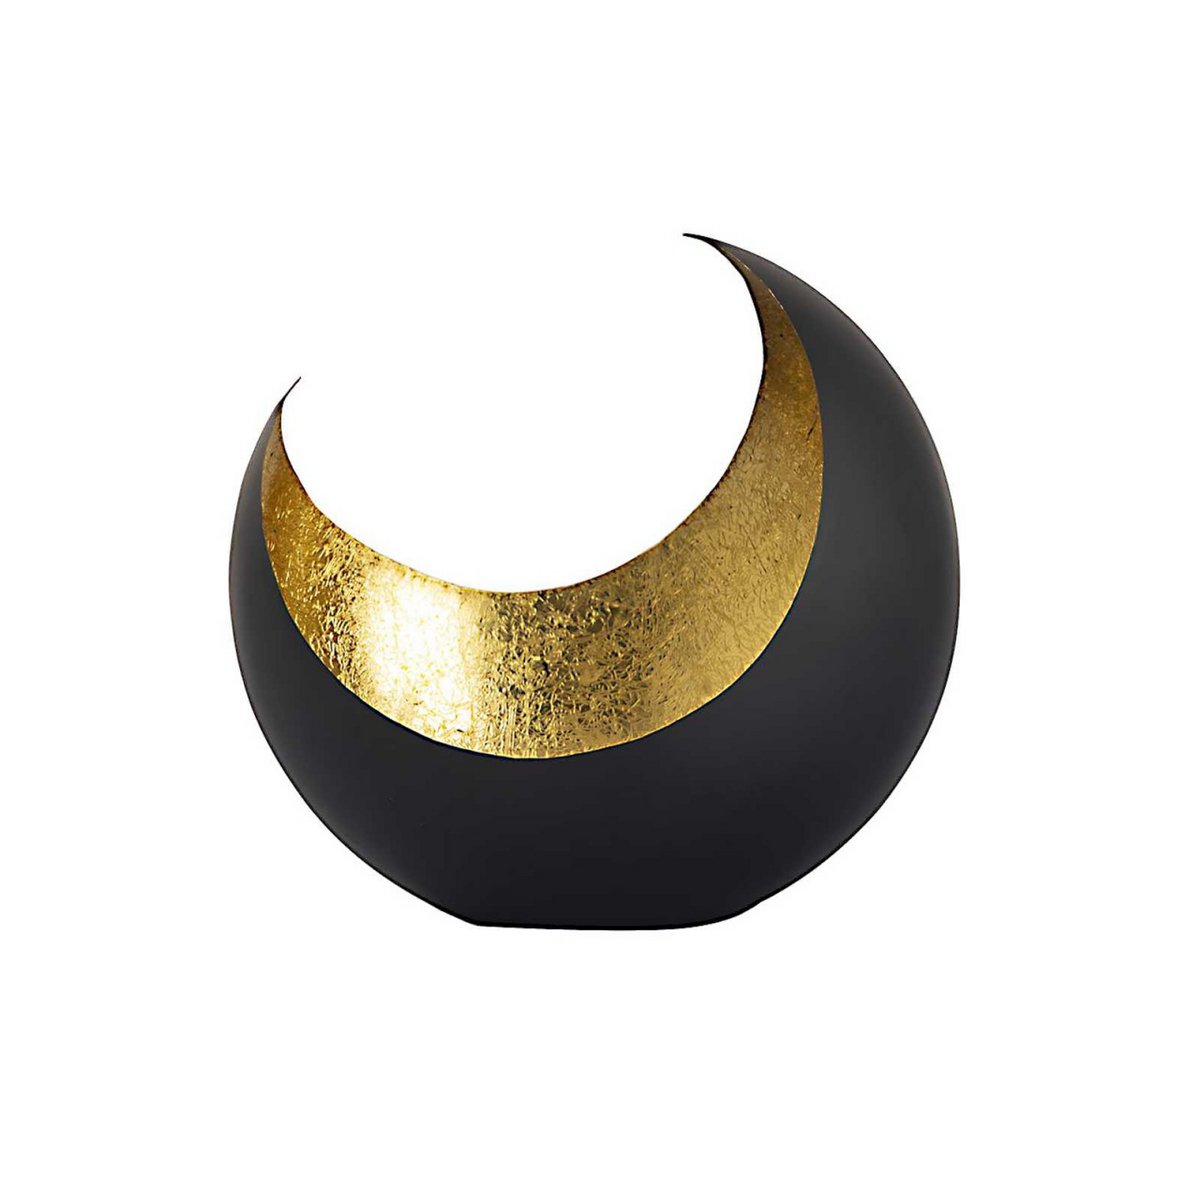 Billede af Fyrfadsstage - lysestage udført som måne/segl form sort mat forgyldt indvendig